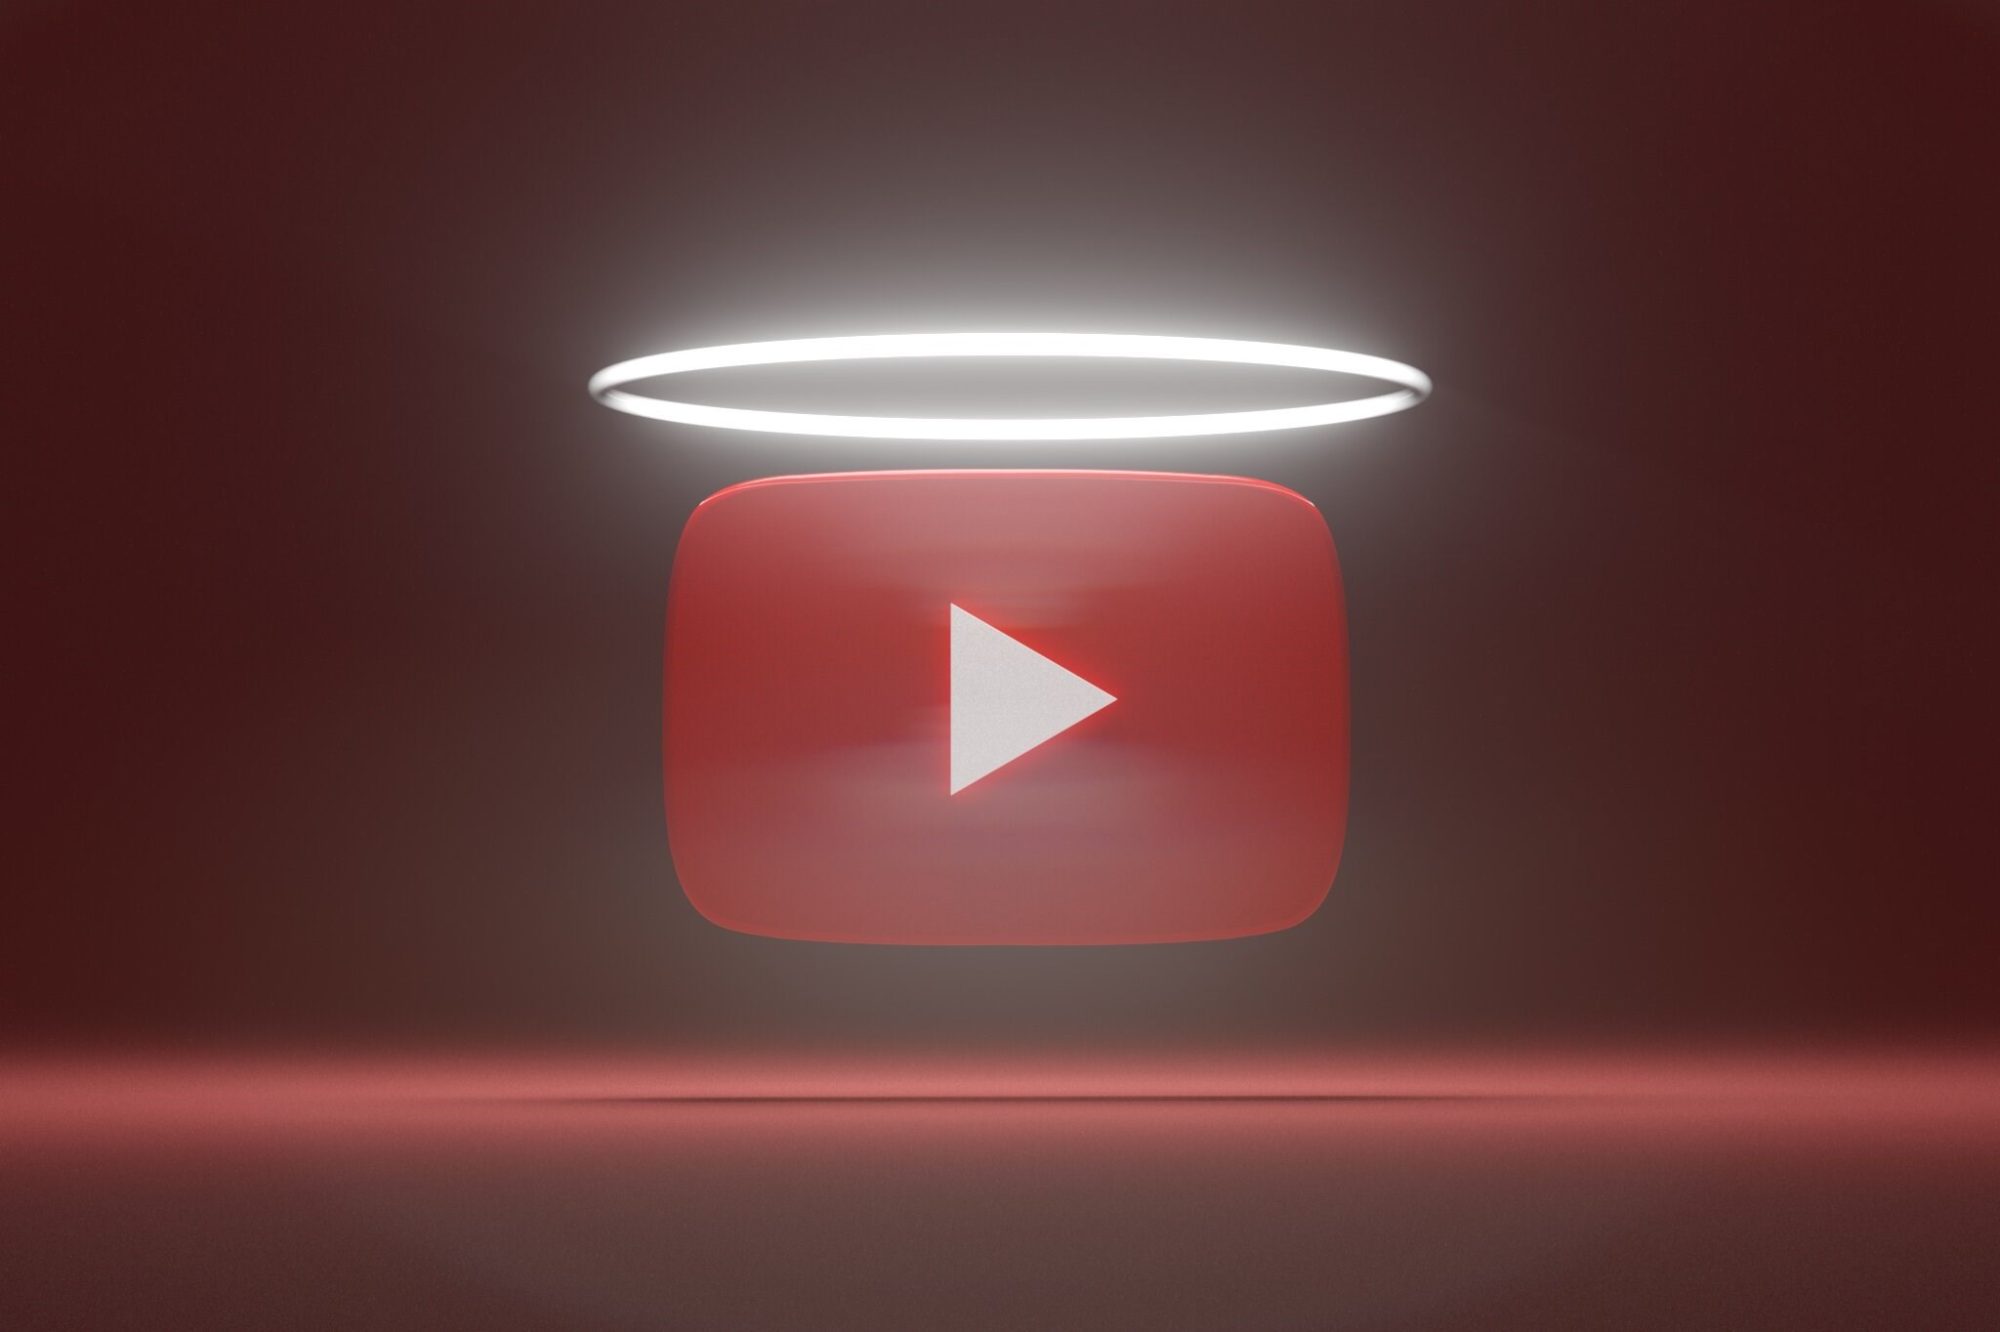 يوتيوب يُطلق تحديثات تحليلات جديدة وصور مصغرة للفيديوهات القصيرة trkeez.com